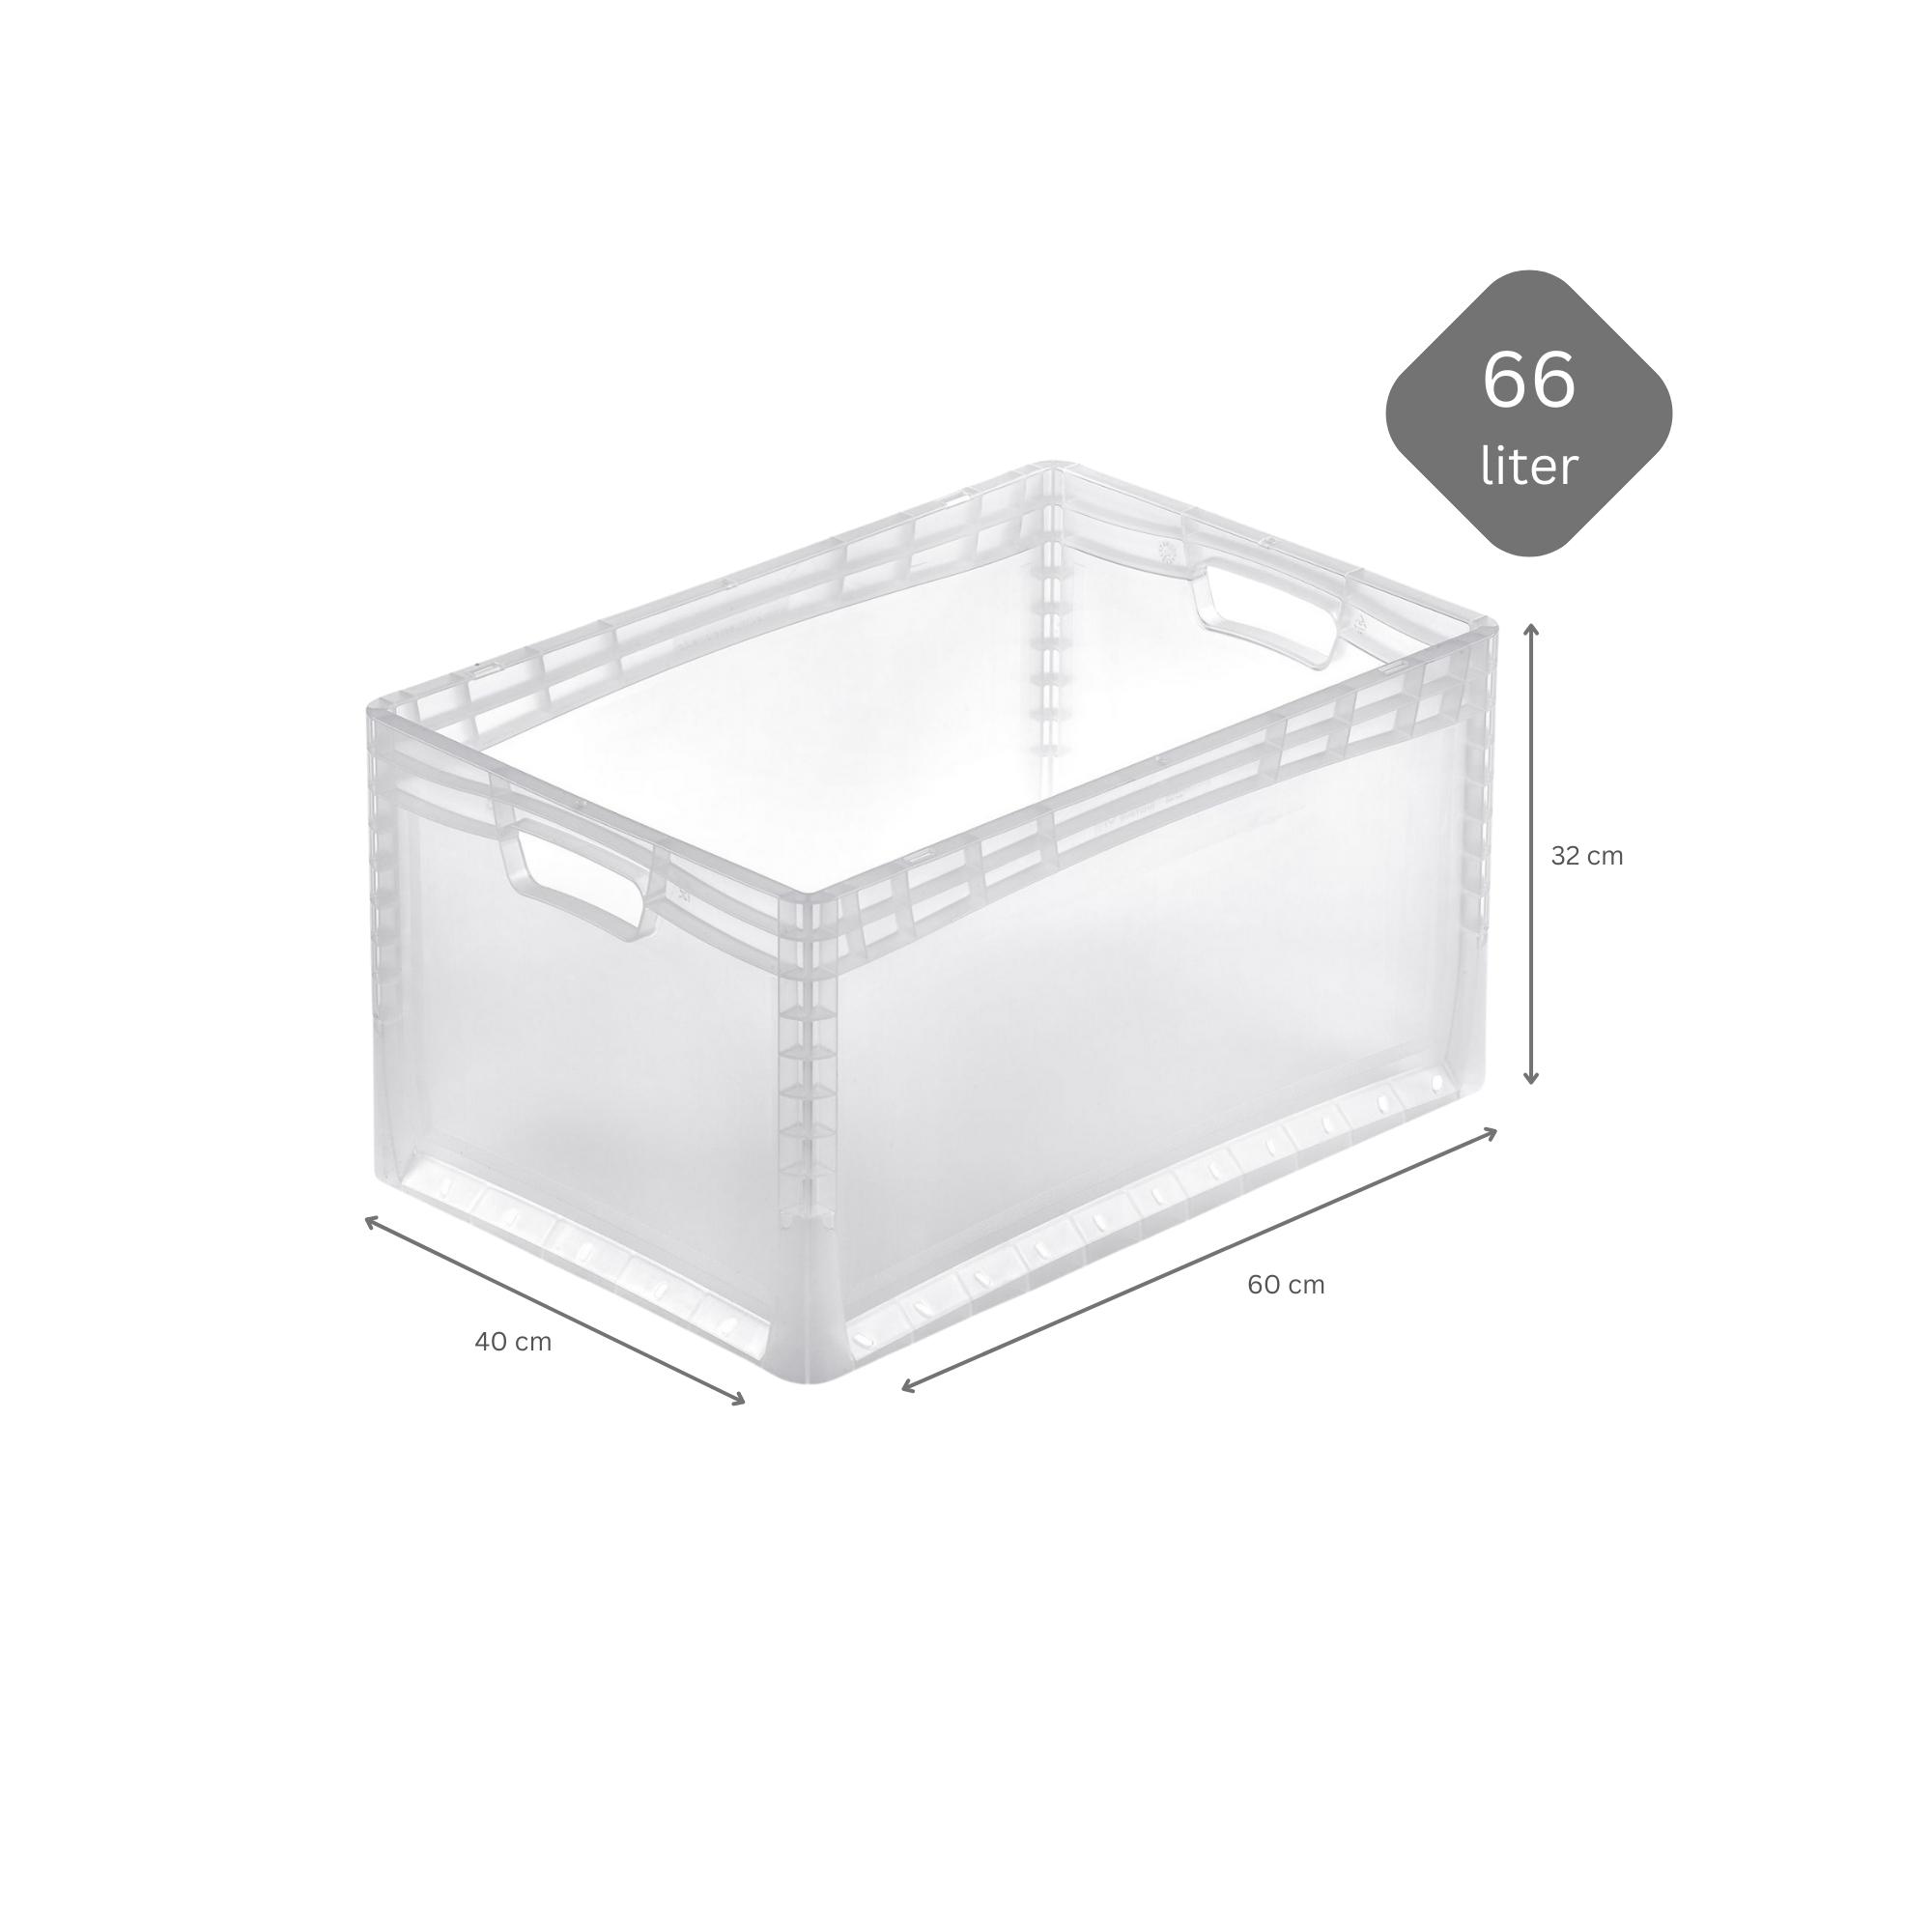 SuperSparSet 5x Transparenter Eurobehälter LightLine mit offenem Griff und Auflagedeckel | HxBxT 32x40x60cm | 66 Liter | Eurobox, Transportbox, Transportbehälter, Stapelbehälter